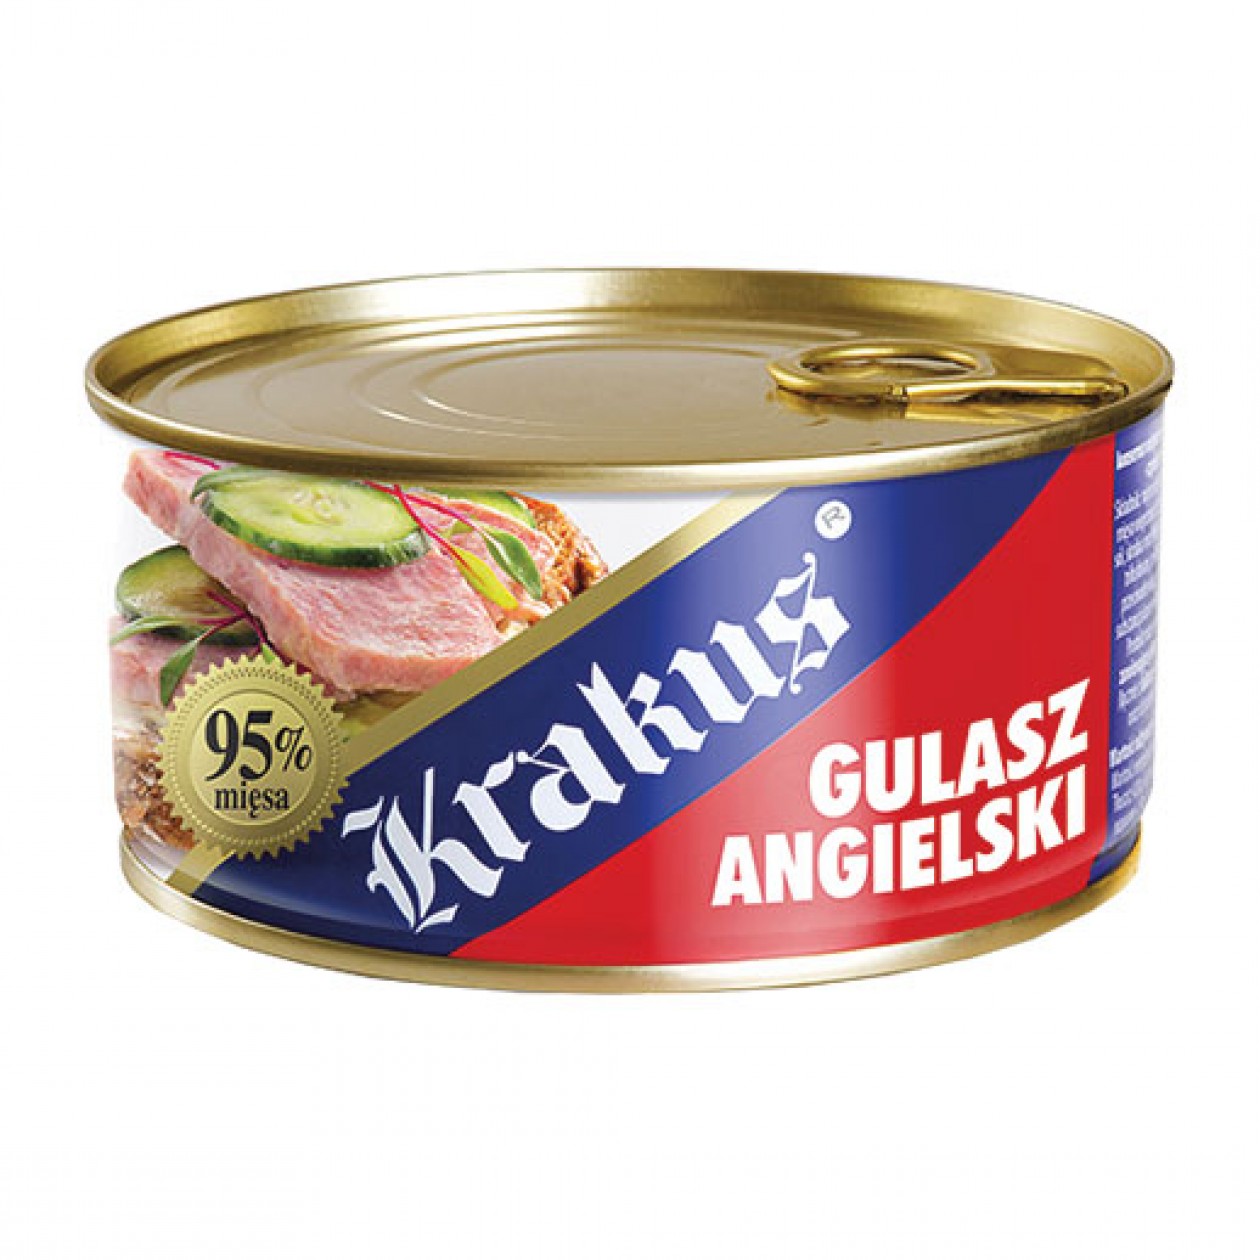 Krakus Canned Meat Gulasz Angielski (3) 6x300g